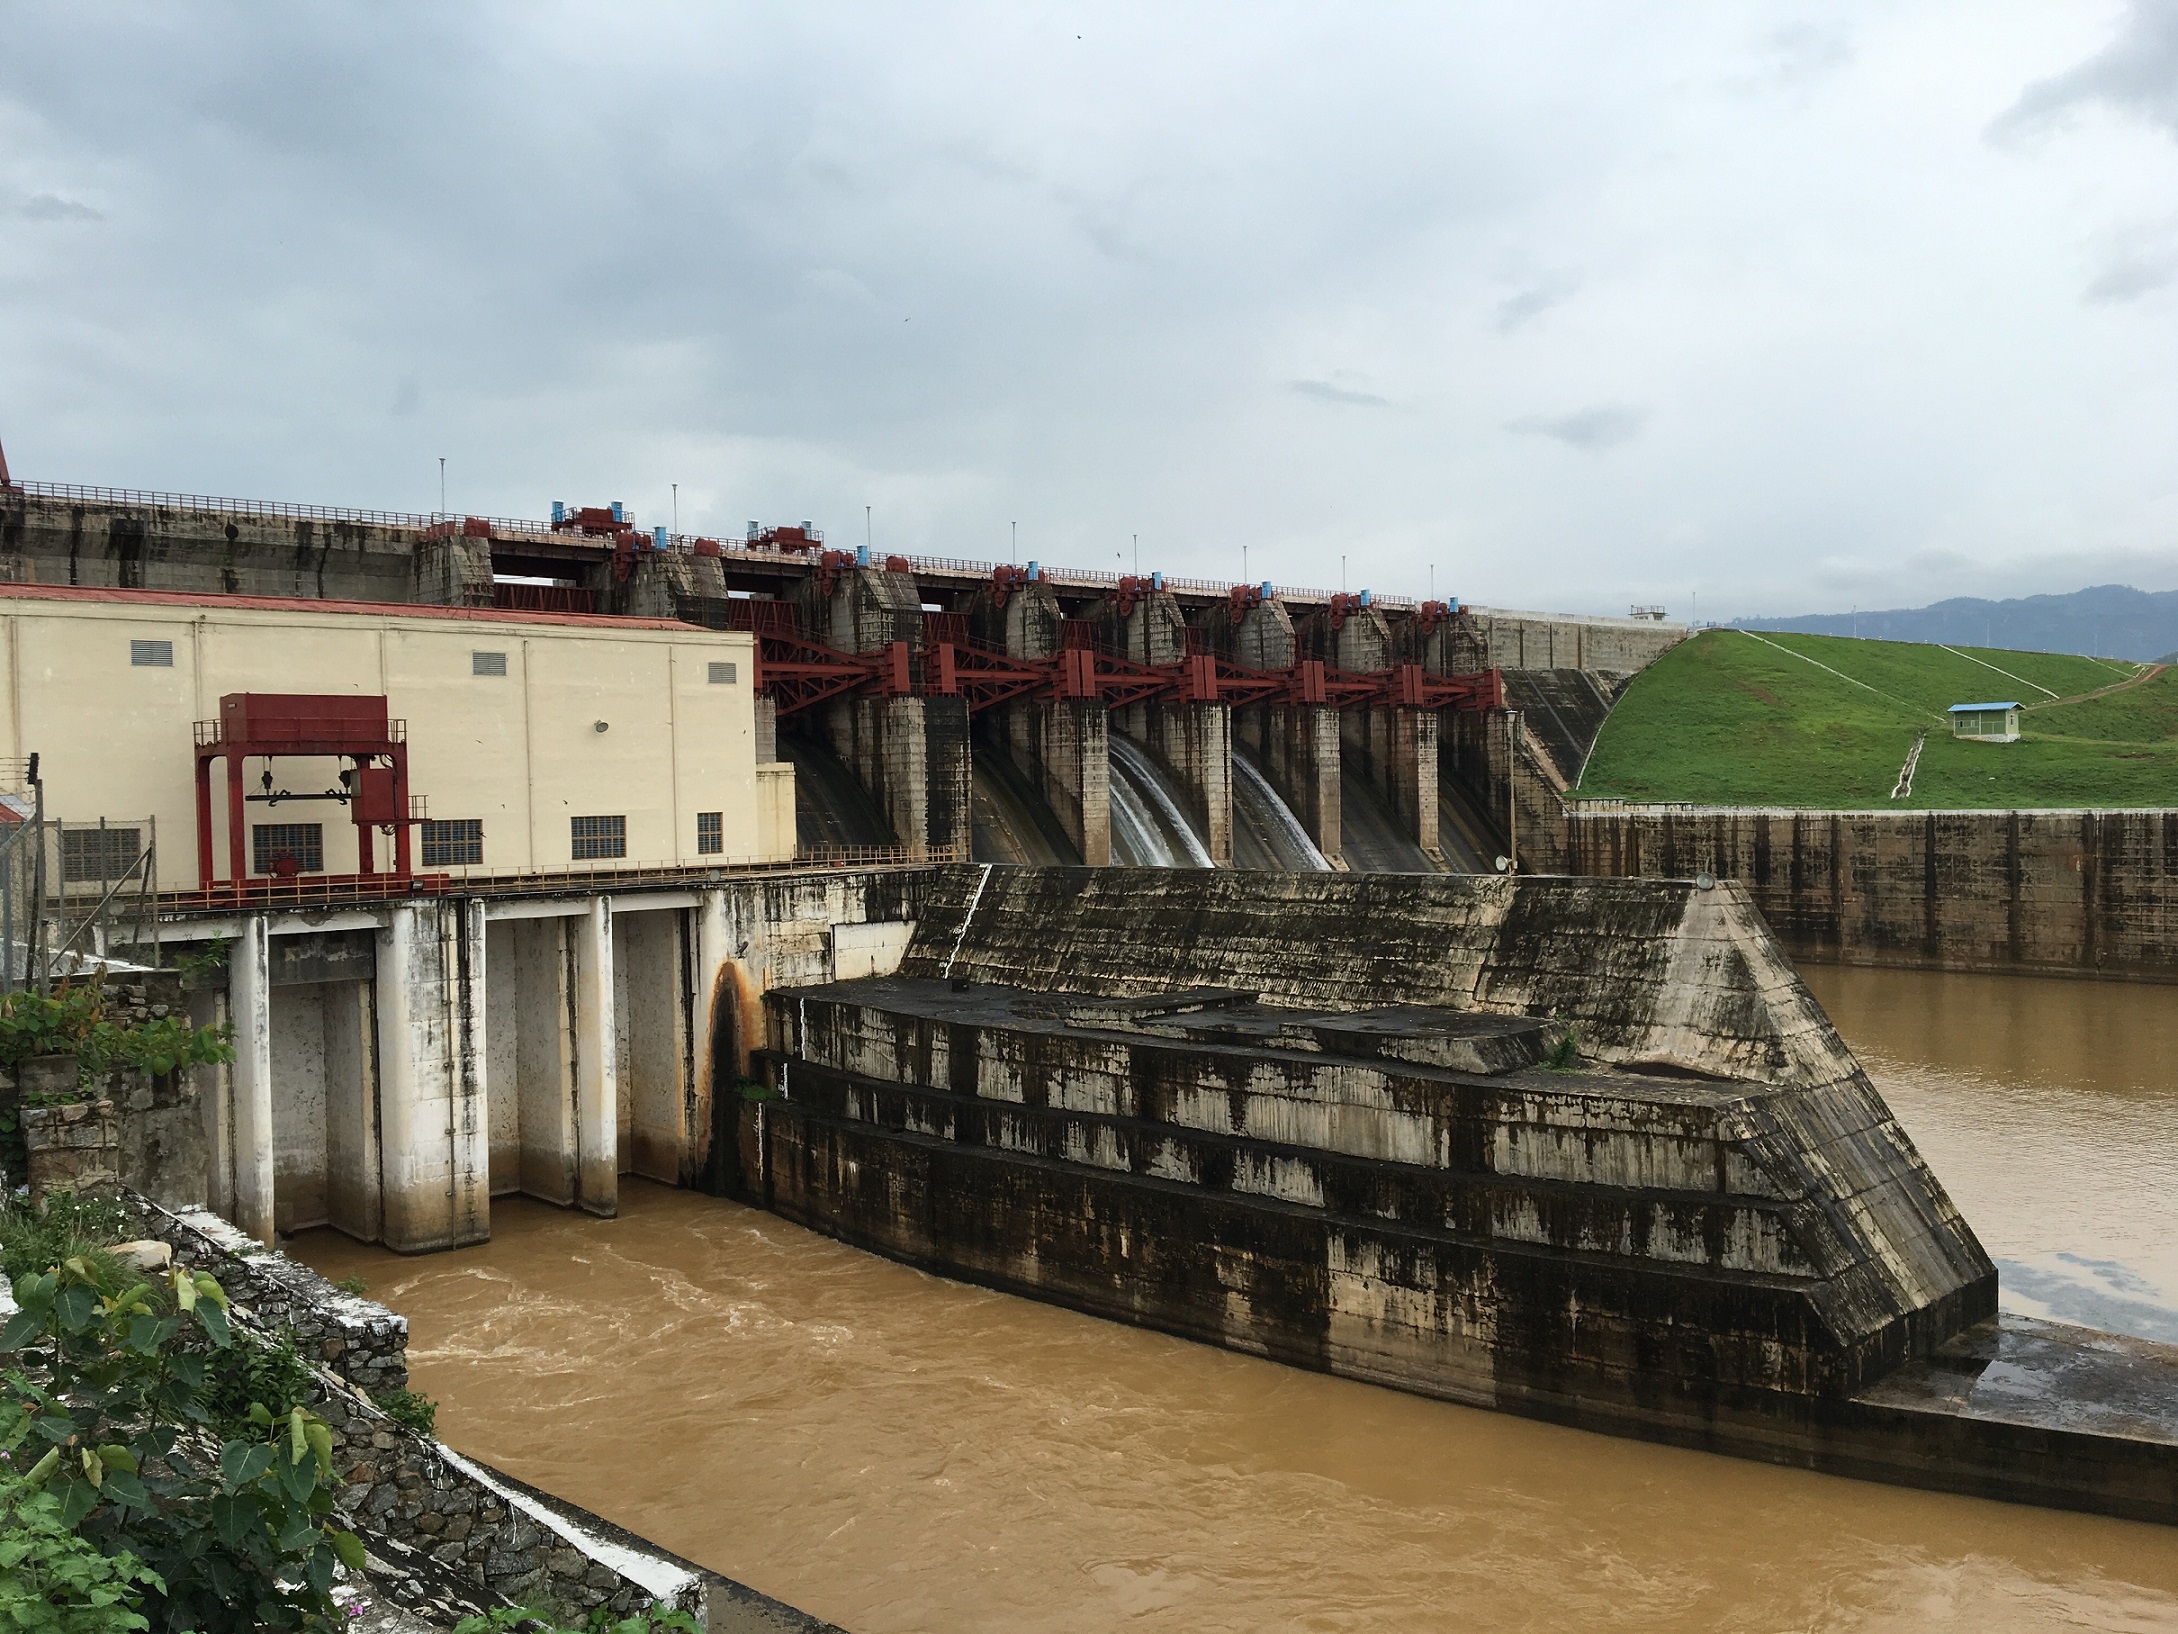 โตชิบาคว้าสัญญาจัดหาอุปกรณ์เครื่องกำเนิดไฟฟ้า ในโครงการบูรณะโรงไฟฟ้าพลังน้ำ Sedawgyi ประเทศเมียนมา